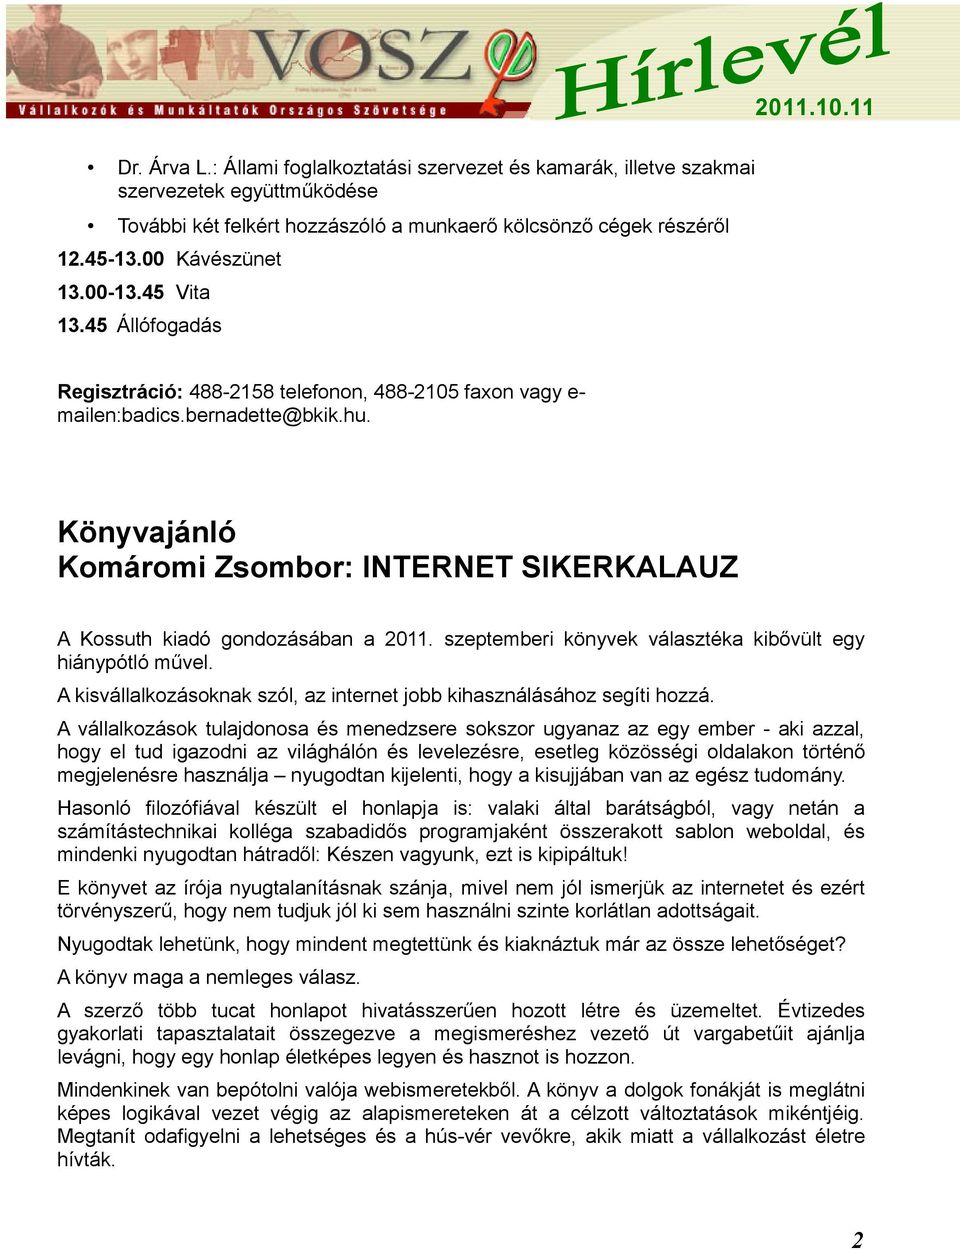 Könyvajánló Komáromi Zsombor: INTERNET SIKERKALAUZ A Kossuth kiadó gondozásában a 2011. szeptemberi könyvek választéka kibővült egy hiánypótló művel.